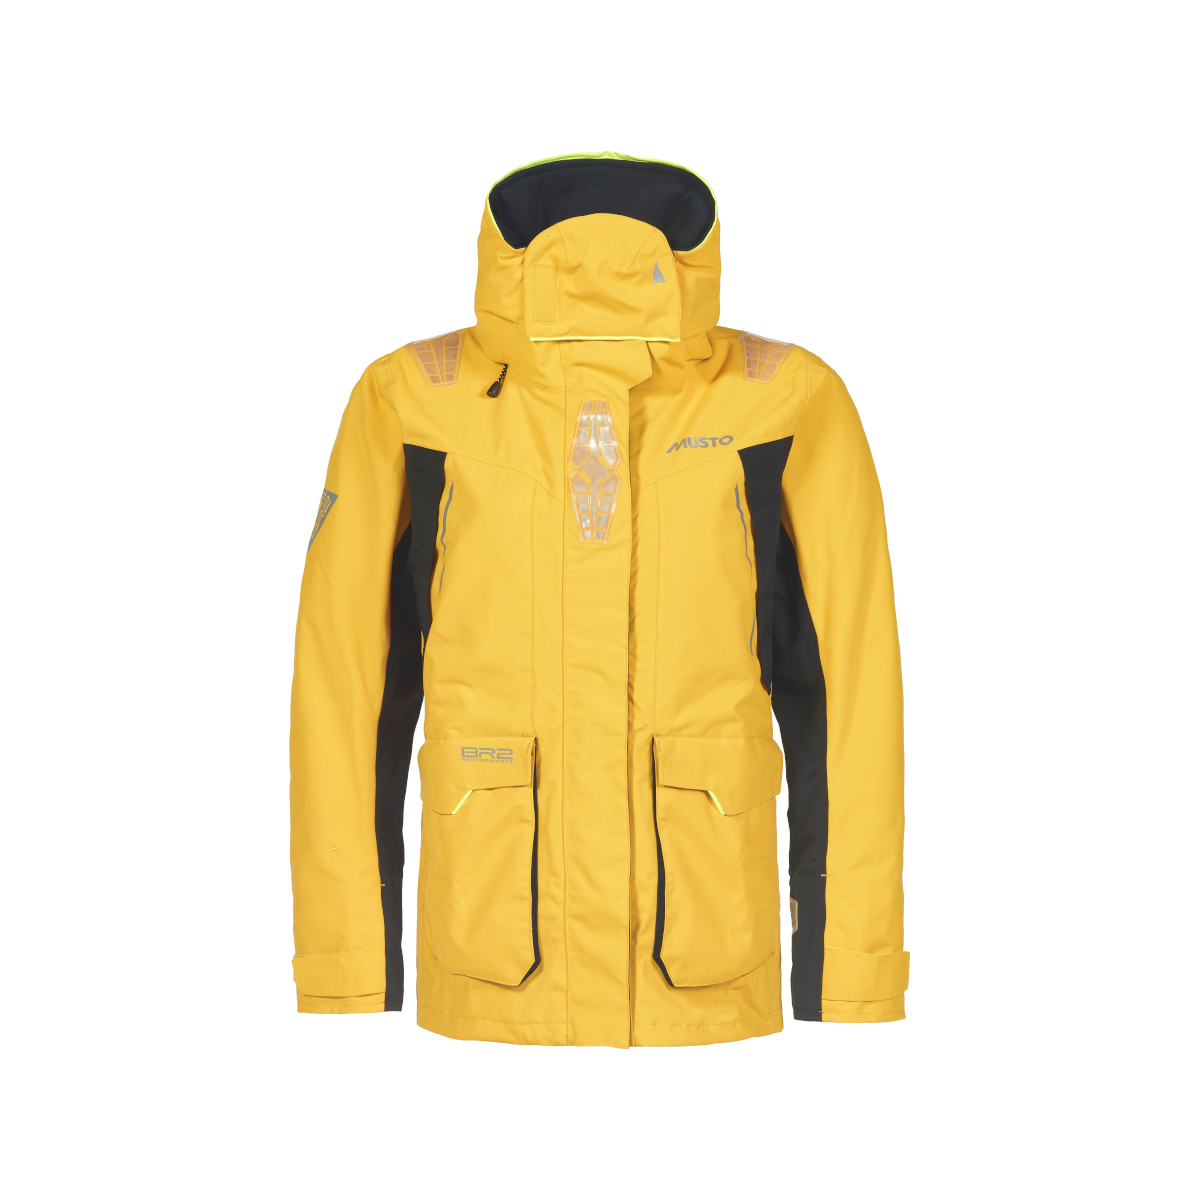 Musto BR2 veste de voile Offshore 2.0 femme jaune, taille 16